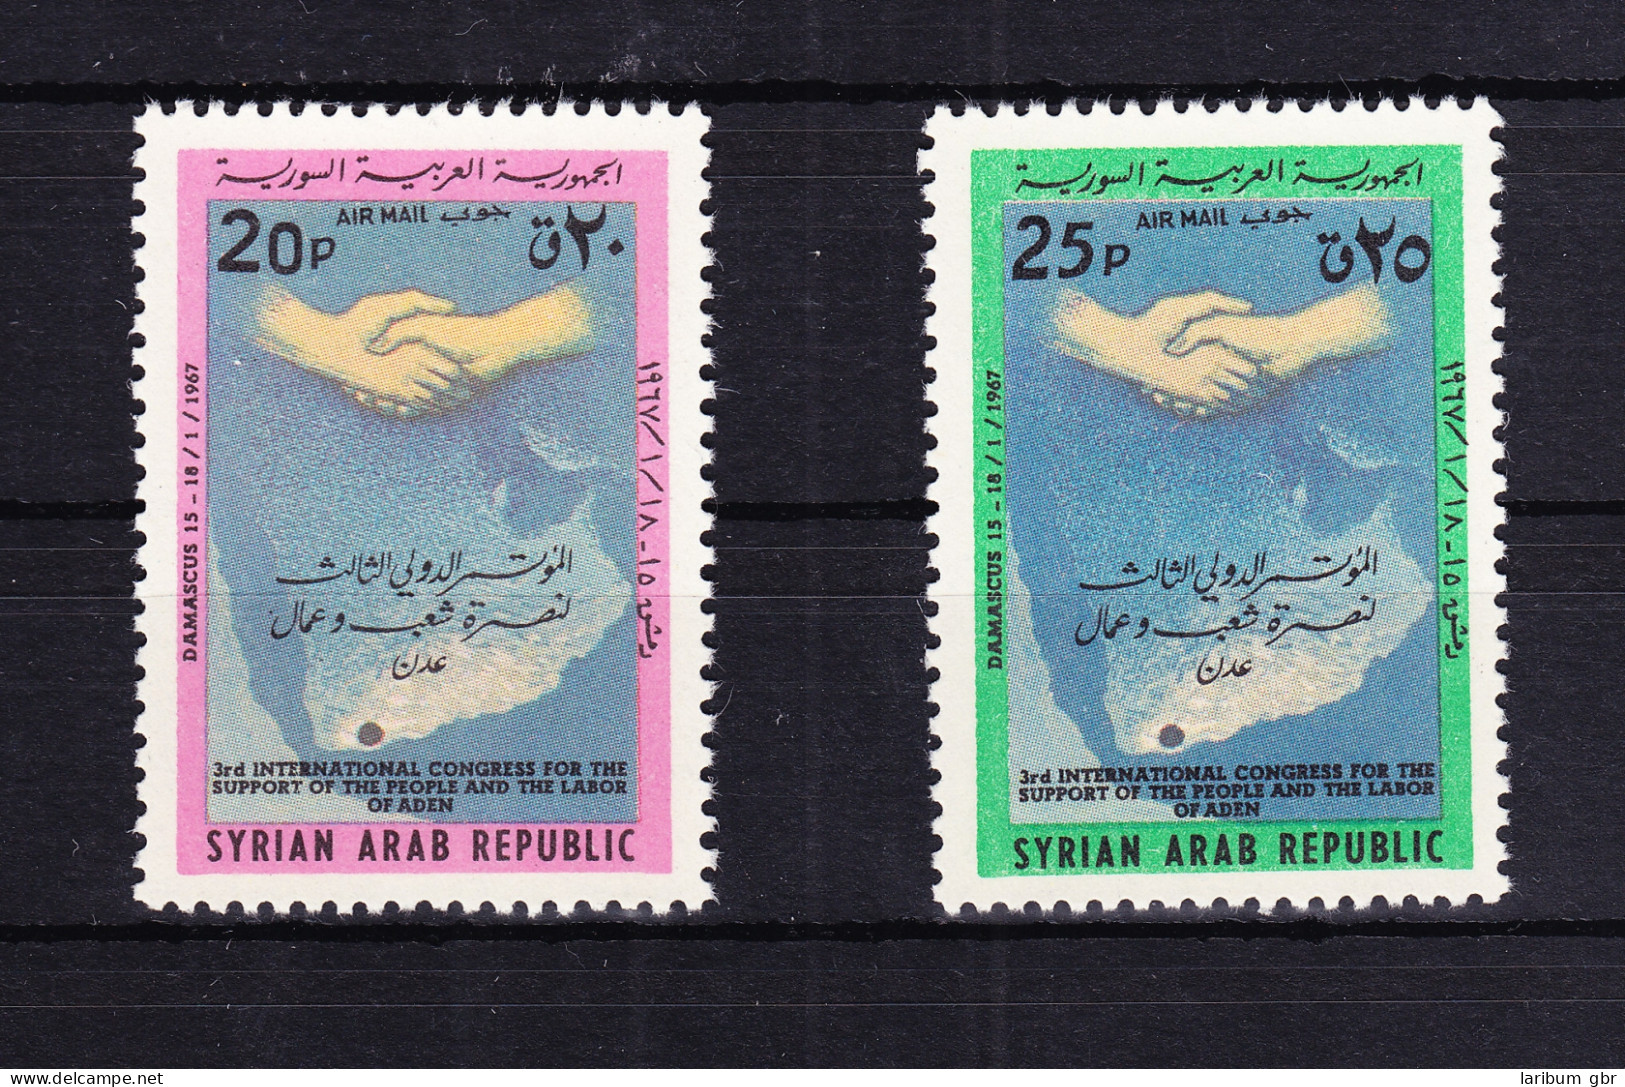 Syrien 959-960 Postfrisch Solidaritätskongreß Mit Aden, MNH #RB546 - Syrie